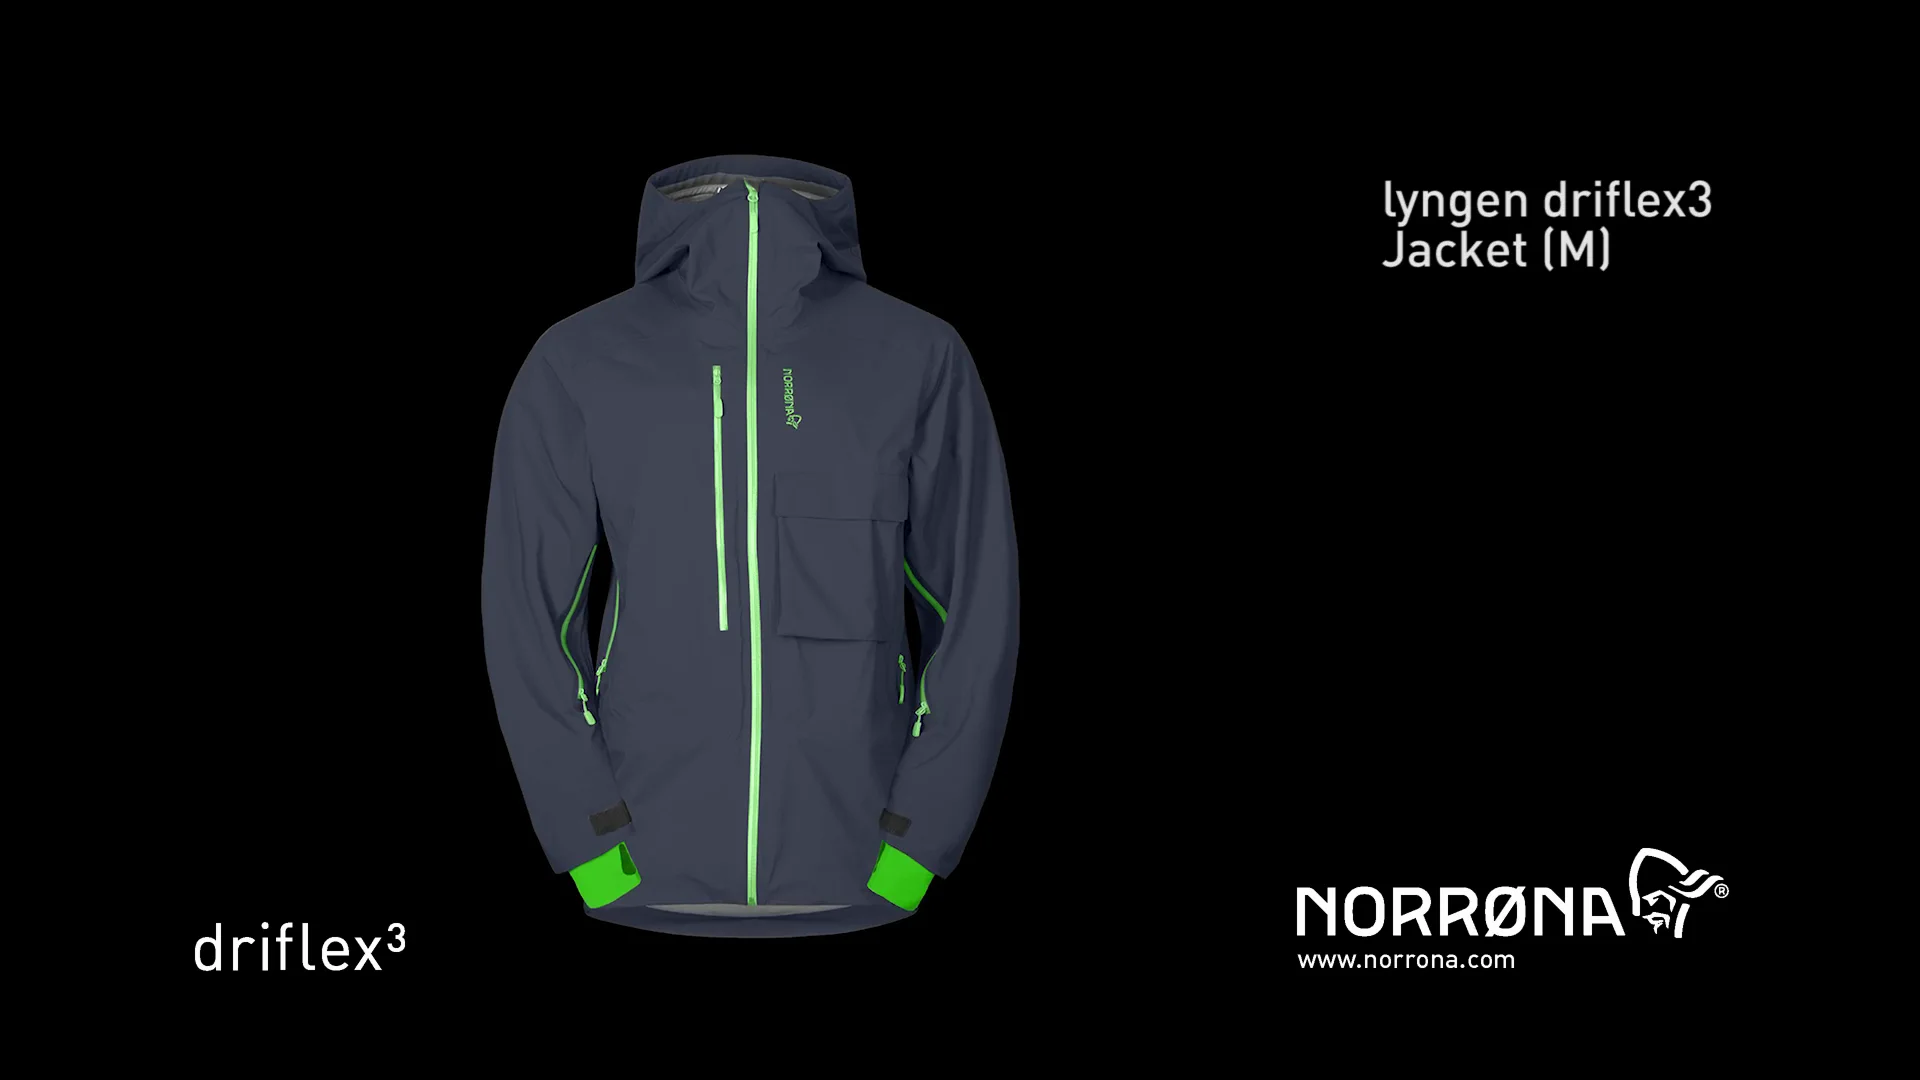 Norrona - Lyngen driflex3 Jacket